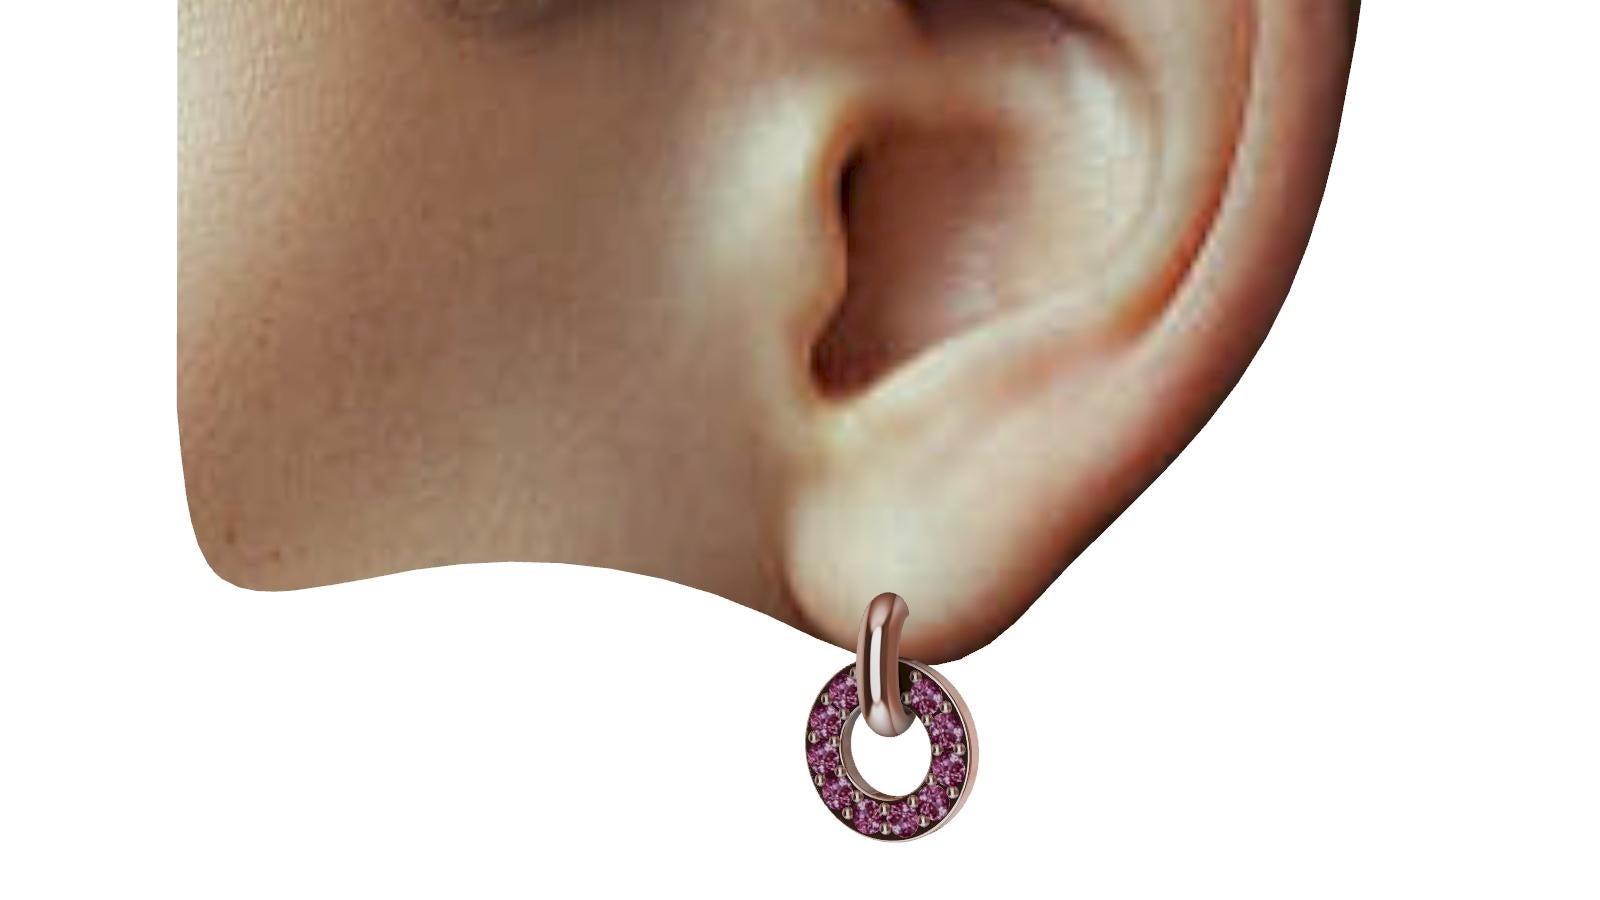  18 Karat Rose Gold Diamond Cut Pink Sapphires Petite Dangle Earrings, Diese sind zierlich. Der Ohrring ist 14 mm x 10,5 mm groß. Winzig, aber mächtig. Den ganzen Tag Eleganz, bis in den Abend hinein kein Problem.  Dies sind rosa Saphire, mit